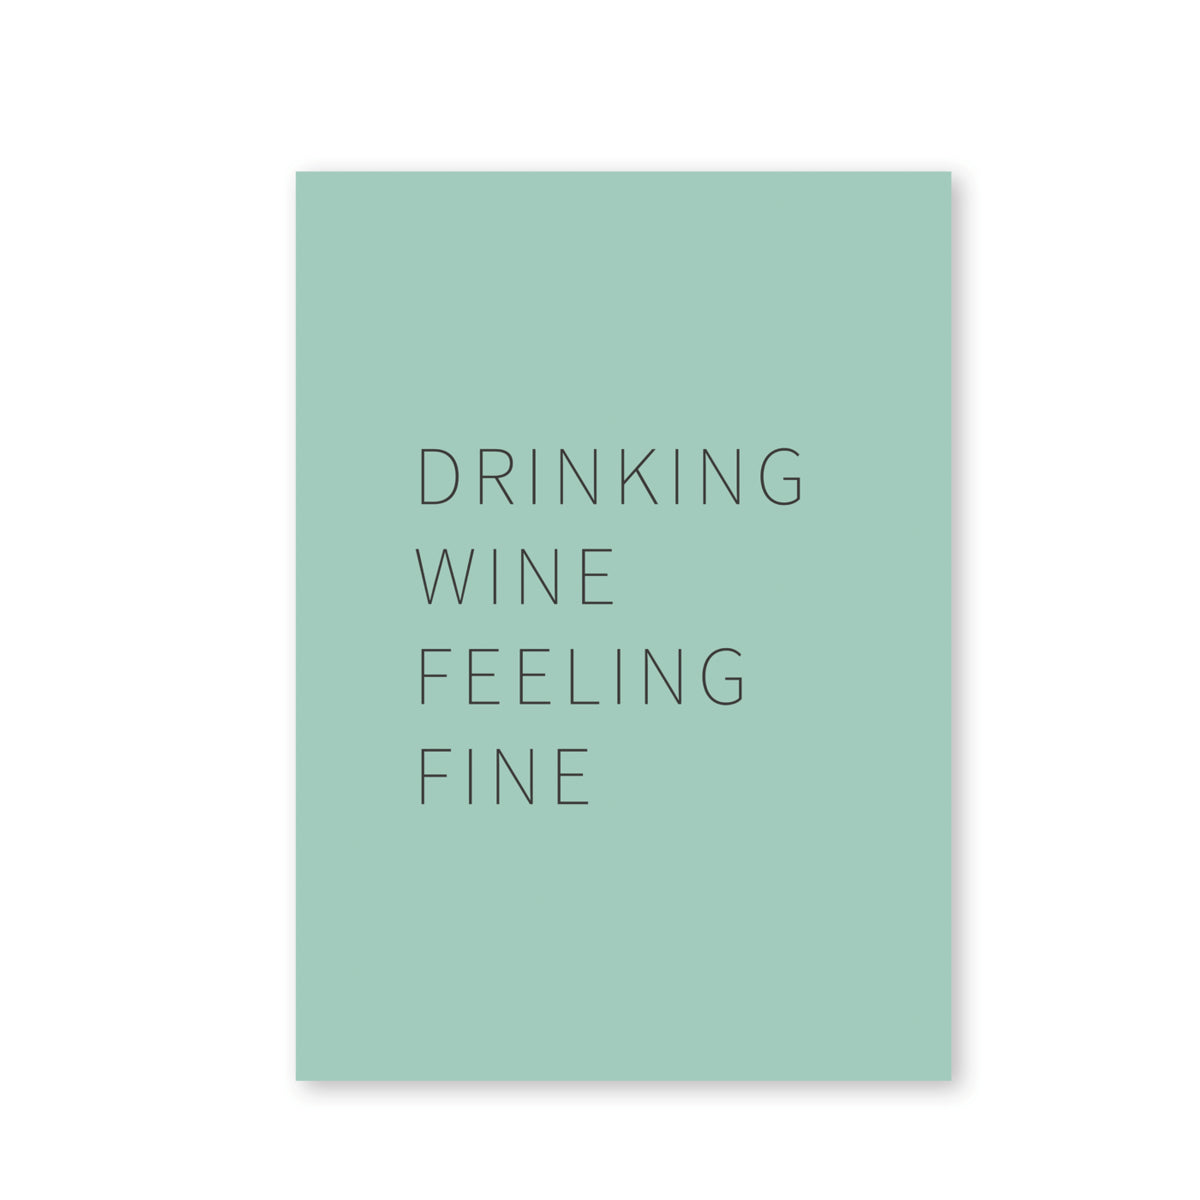 Drinking wine, feeling fine